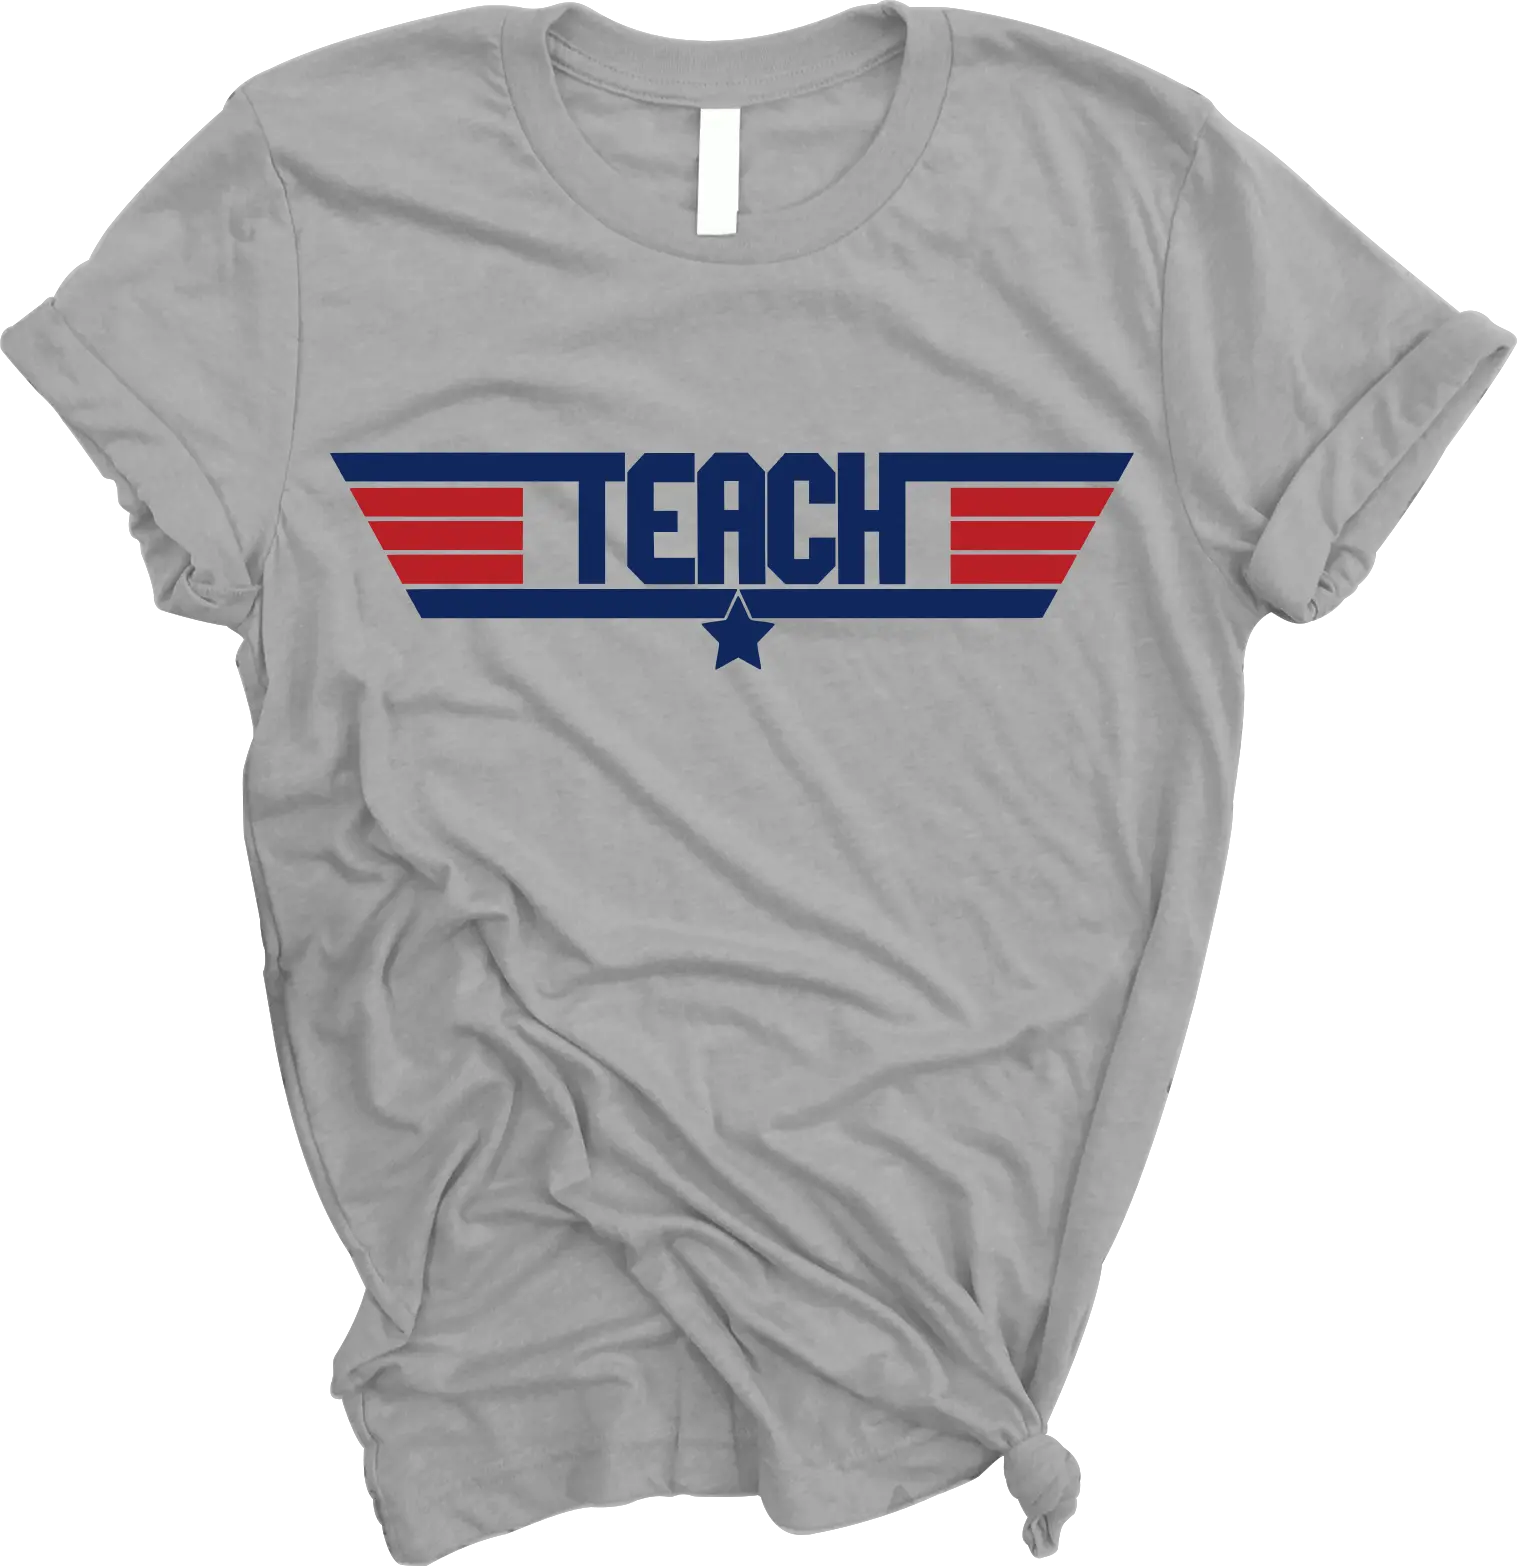 Teach” Top Gun Themed Shirt - The Teacher\'s Crate